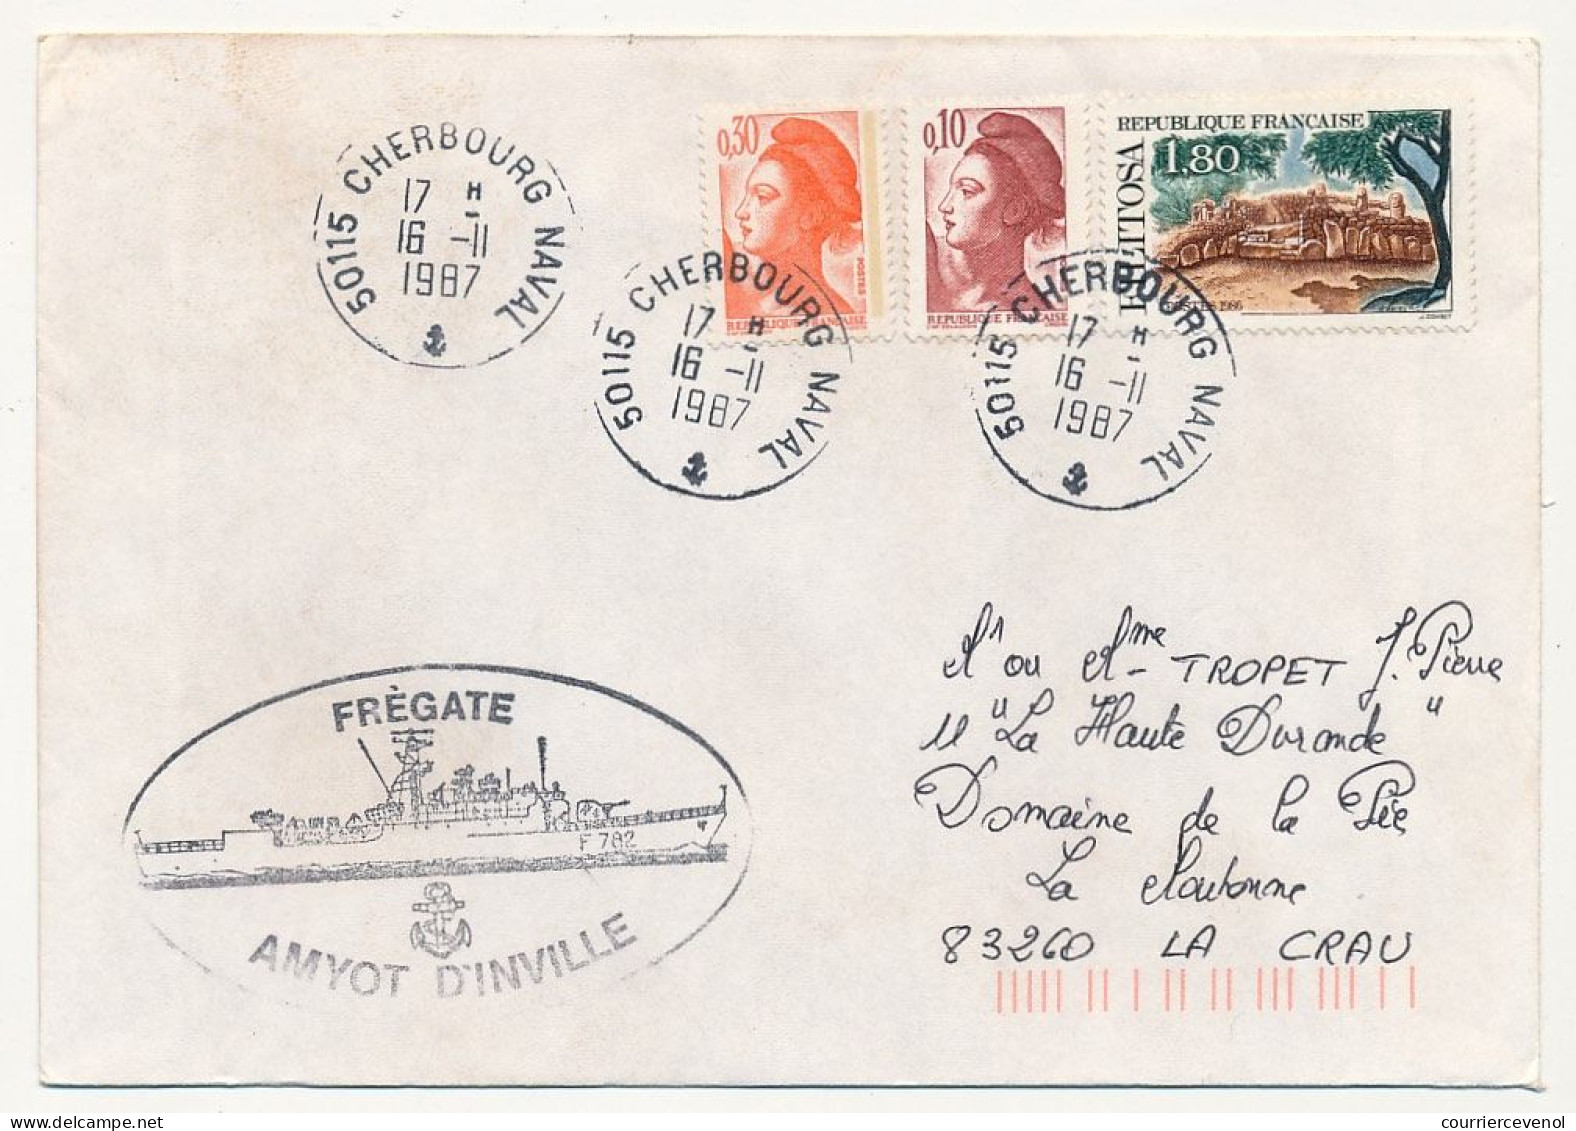 FRANCE - Env. Aff. Composé Cad 50115 Cherbourg Naval - 16/11/1987 + Frégate Amyot D'Inville - Poste Navale